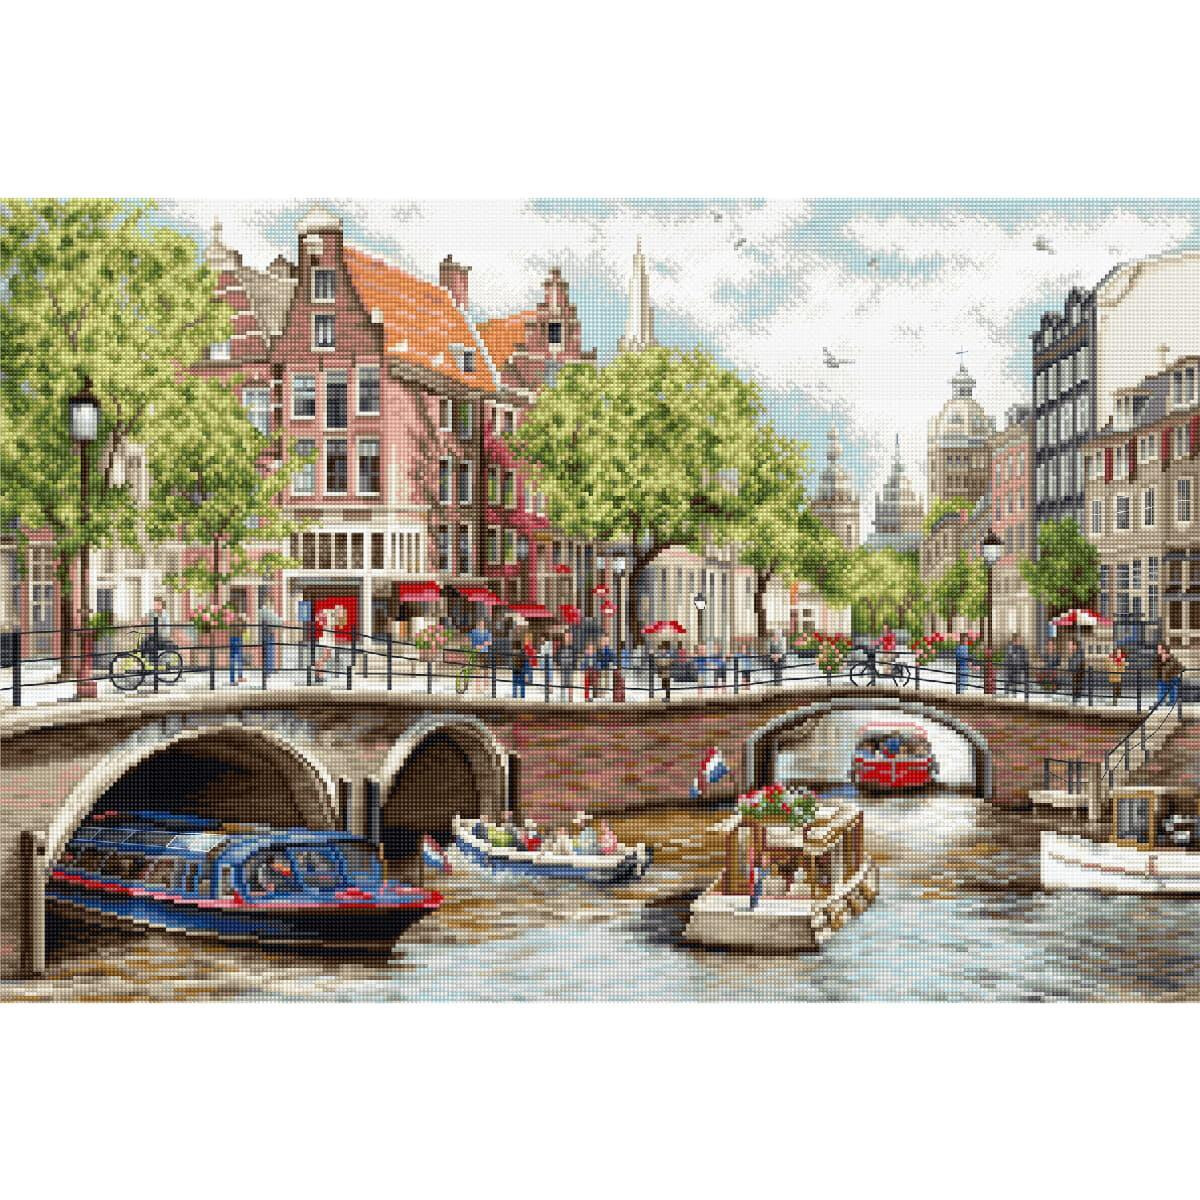 Eine lebendige Kanalszene in Amsterdam zeigt malerische...